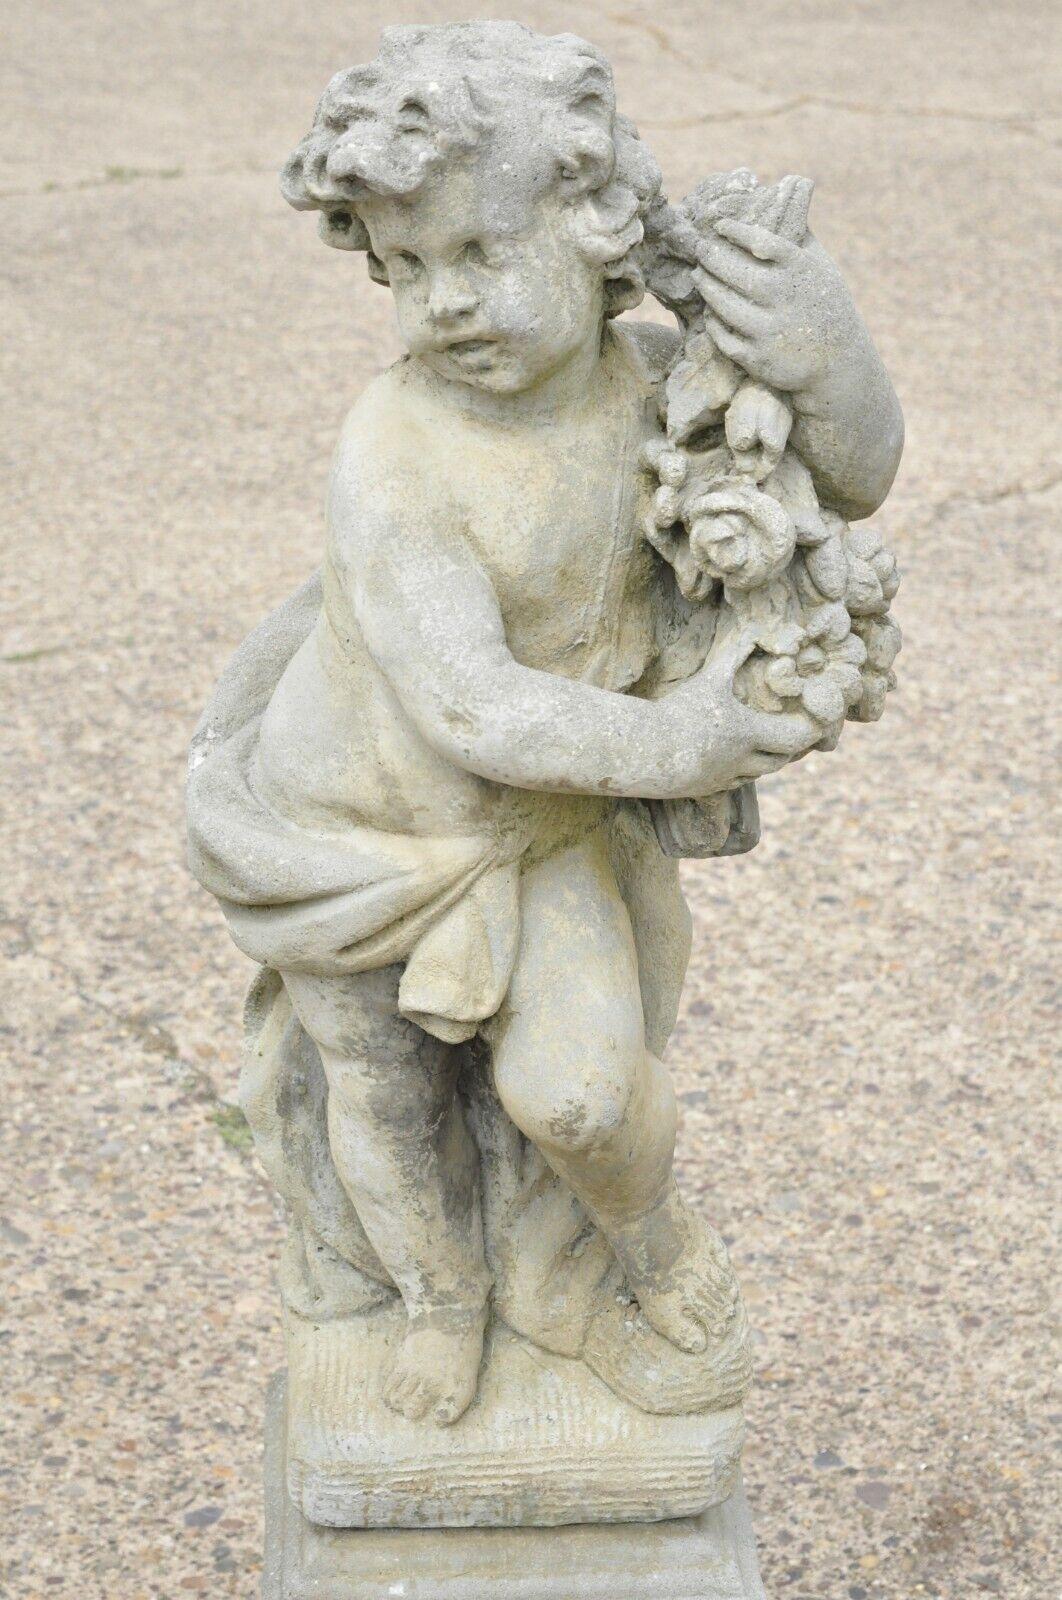 4 seasons cherub statues